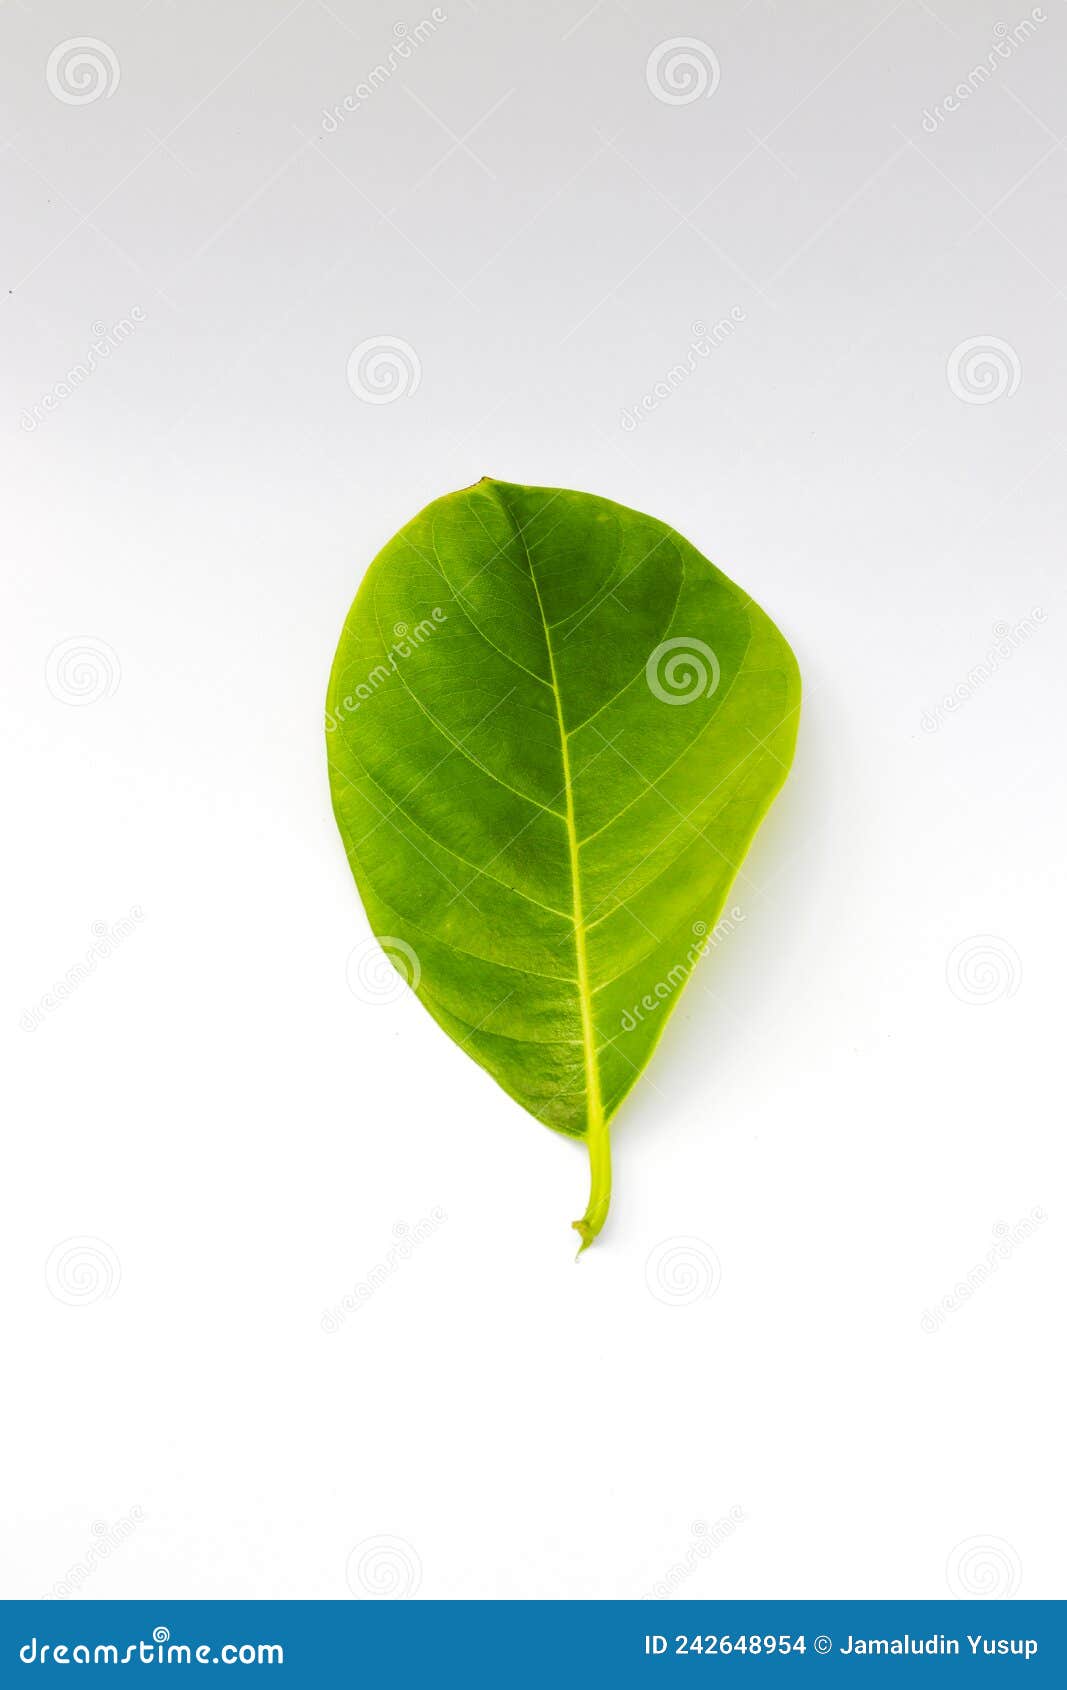 Single Green Jackfruit Leaf Isolated on White Background Stock Photo ...